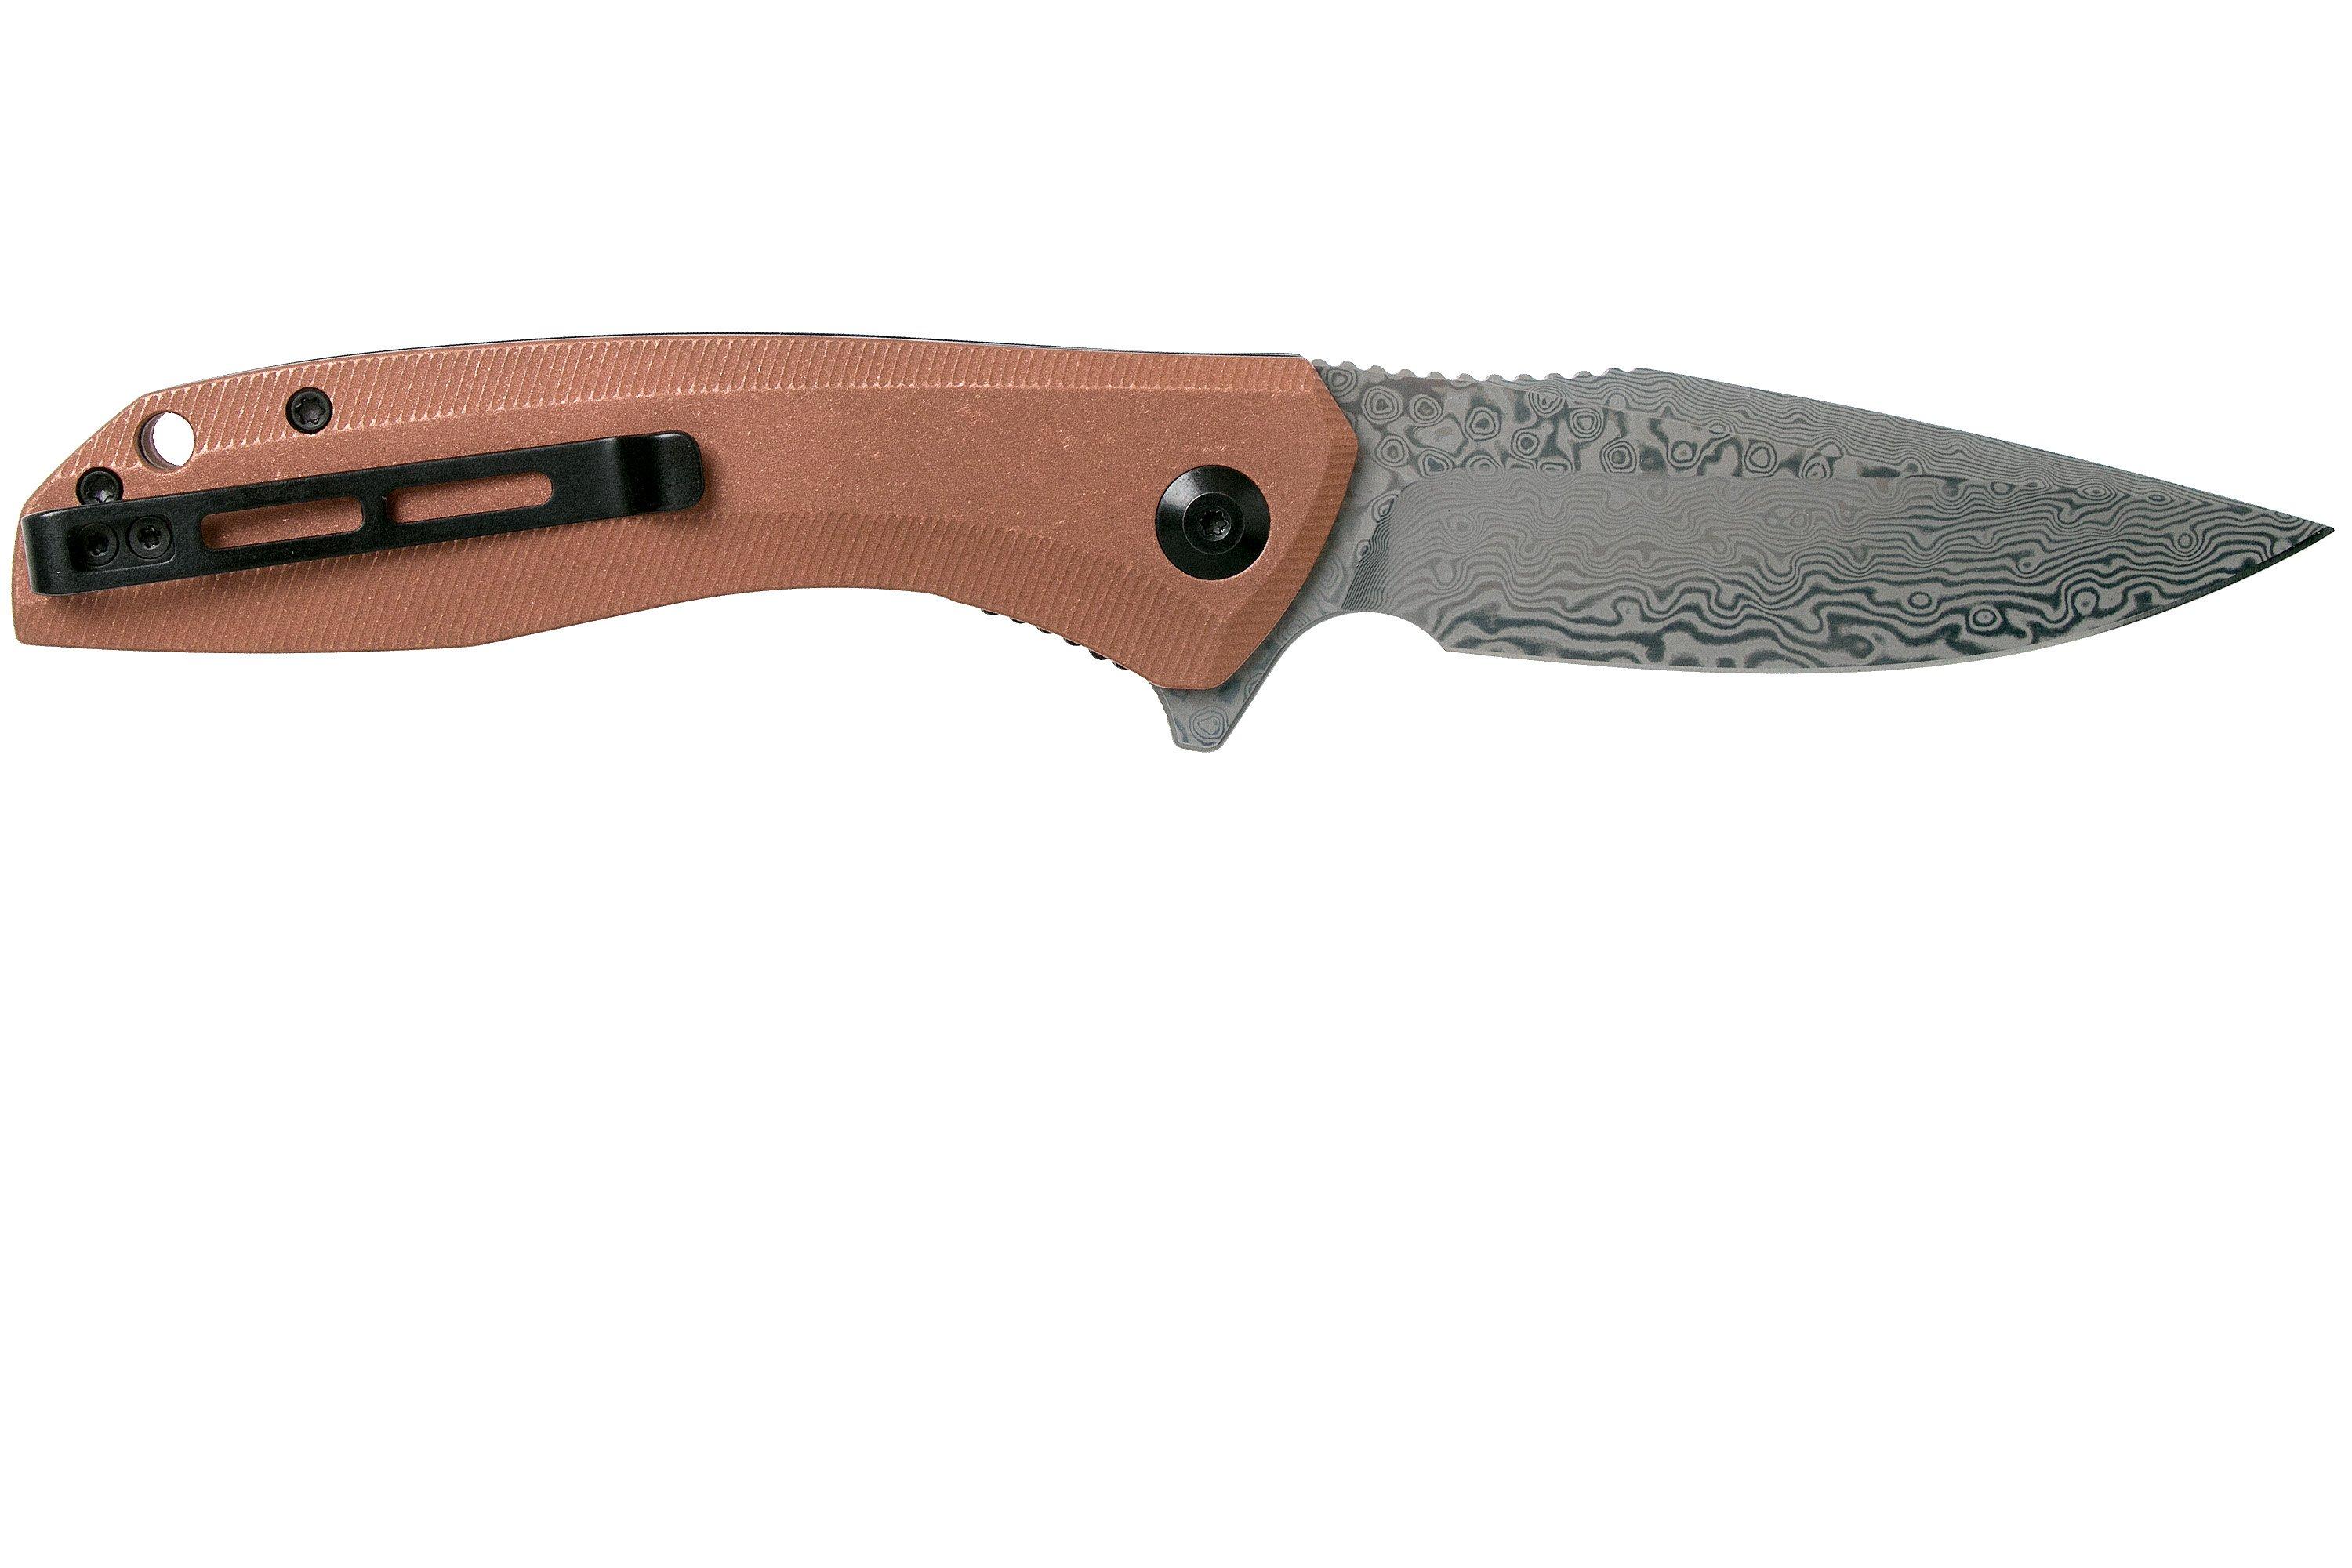 Civivi Baklash C801DS-2 Damascus, Copper pocket knife | Advantageously ...